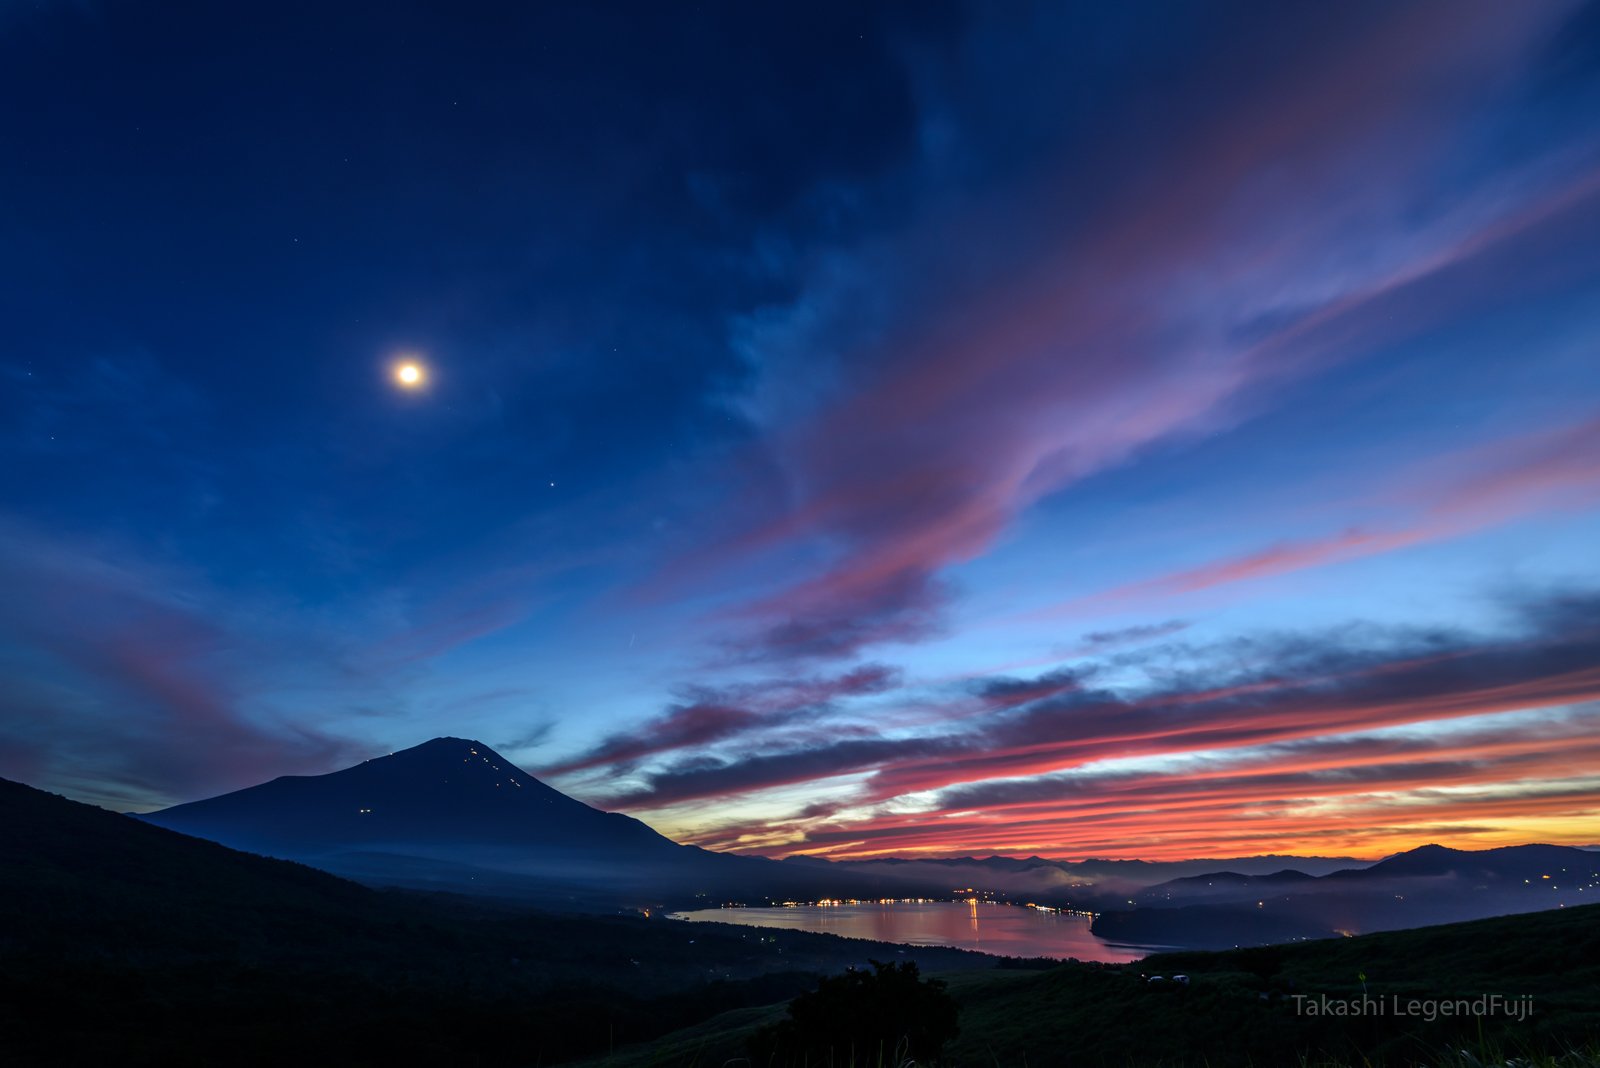 Fuji,mountain,Japan,cloud,sunset,night,red,blue,lake,moon,luna,, Takashi